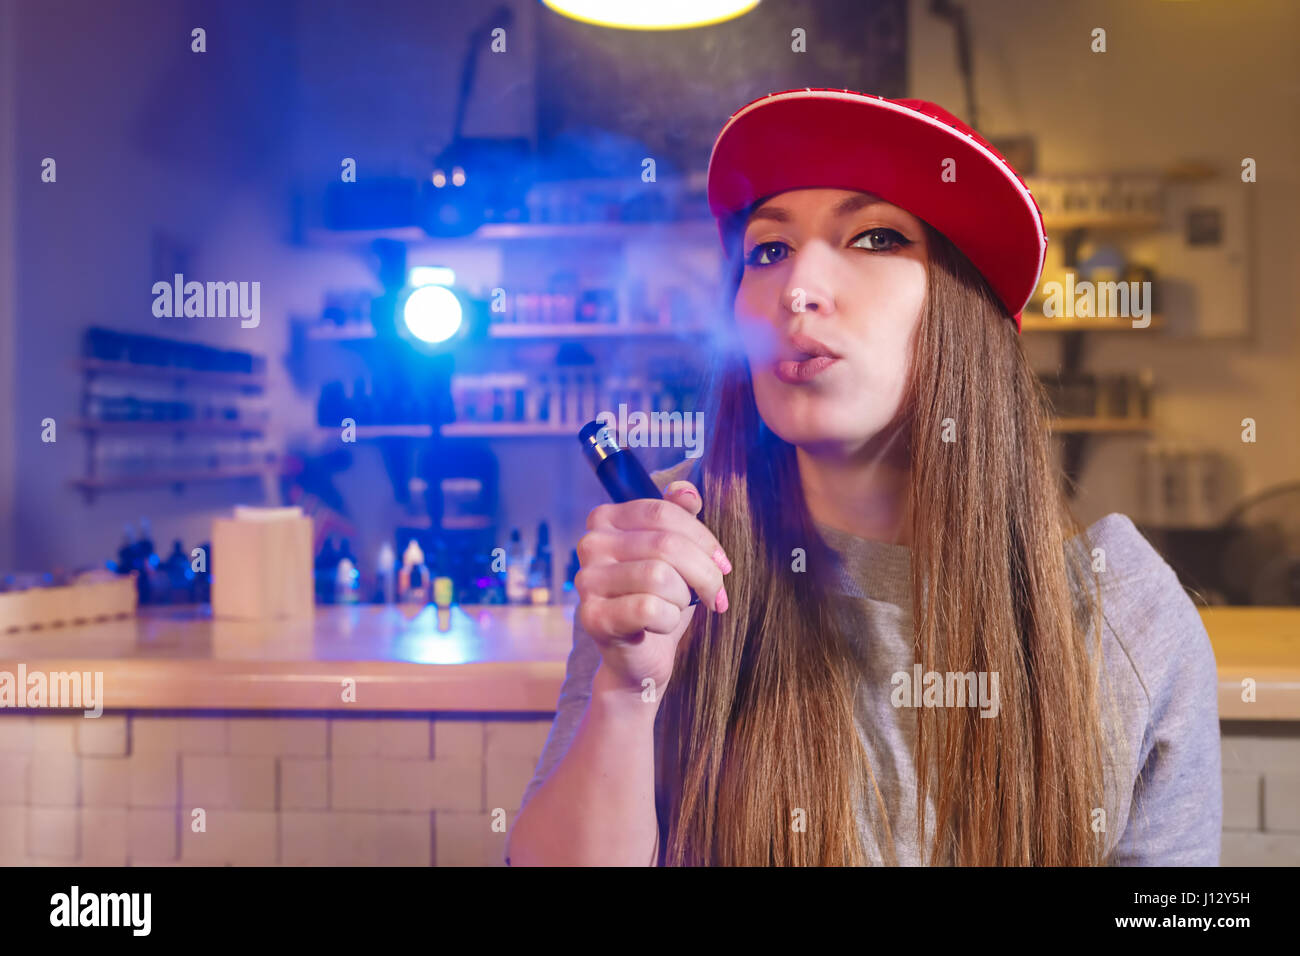 Junge hübsche Frau im roten Mütze Rauch eine elektronische Zigarette im Vaporizer shop Stockfoto